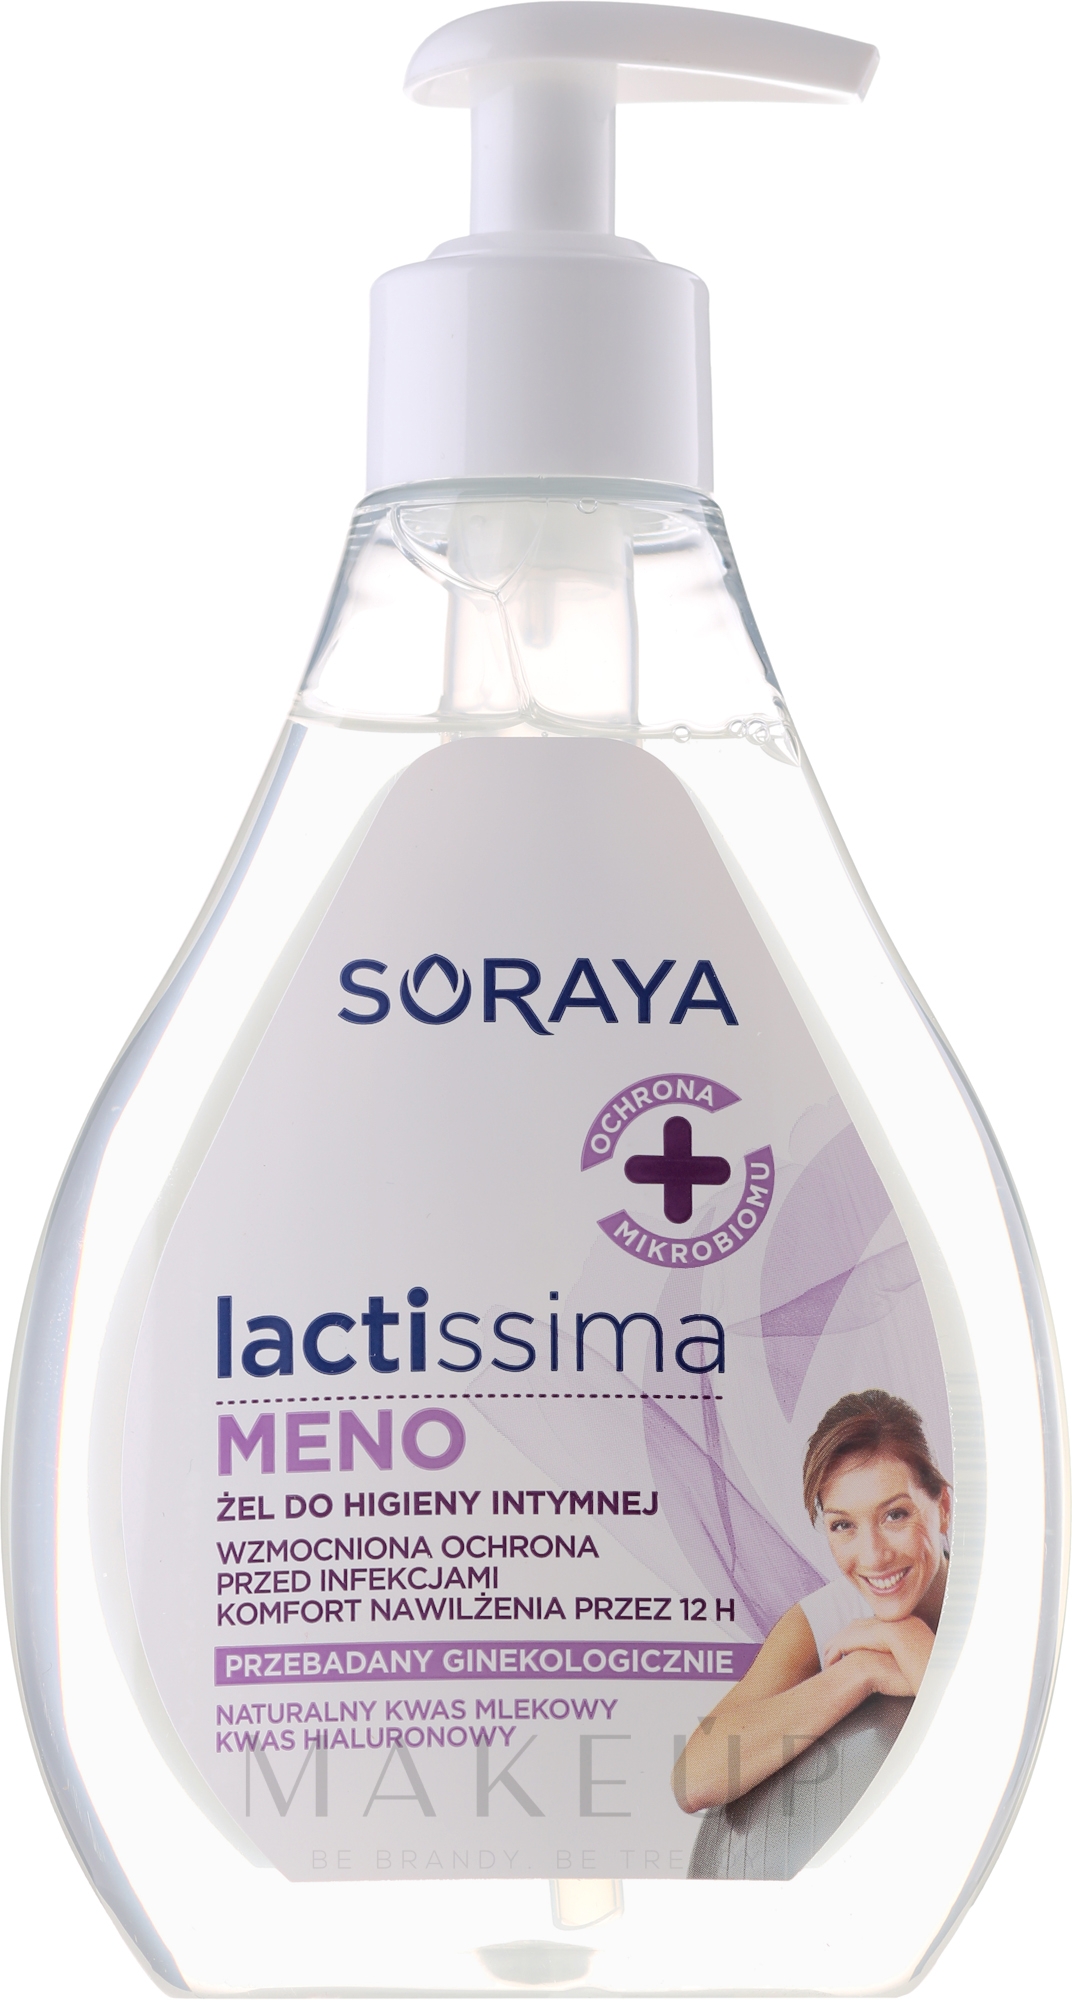 Emulsion für die Intimhygiene in der Menopause - Soraya Lactissima Menopauza Emulsion For Intimate Hygiene — Foto 300 ml